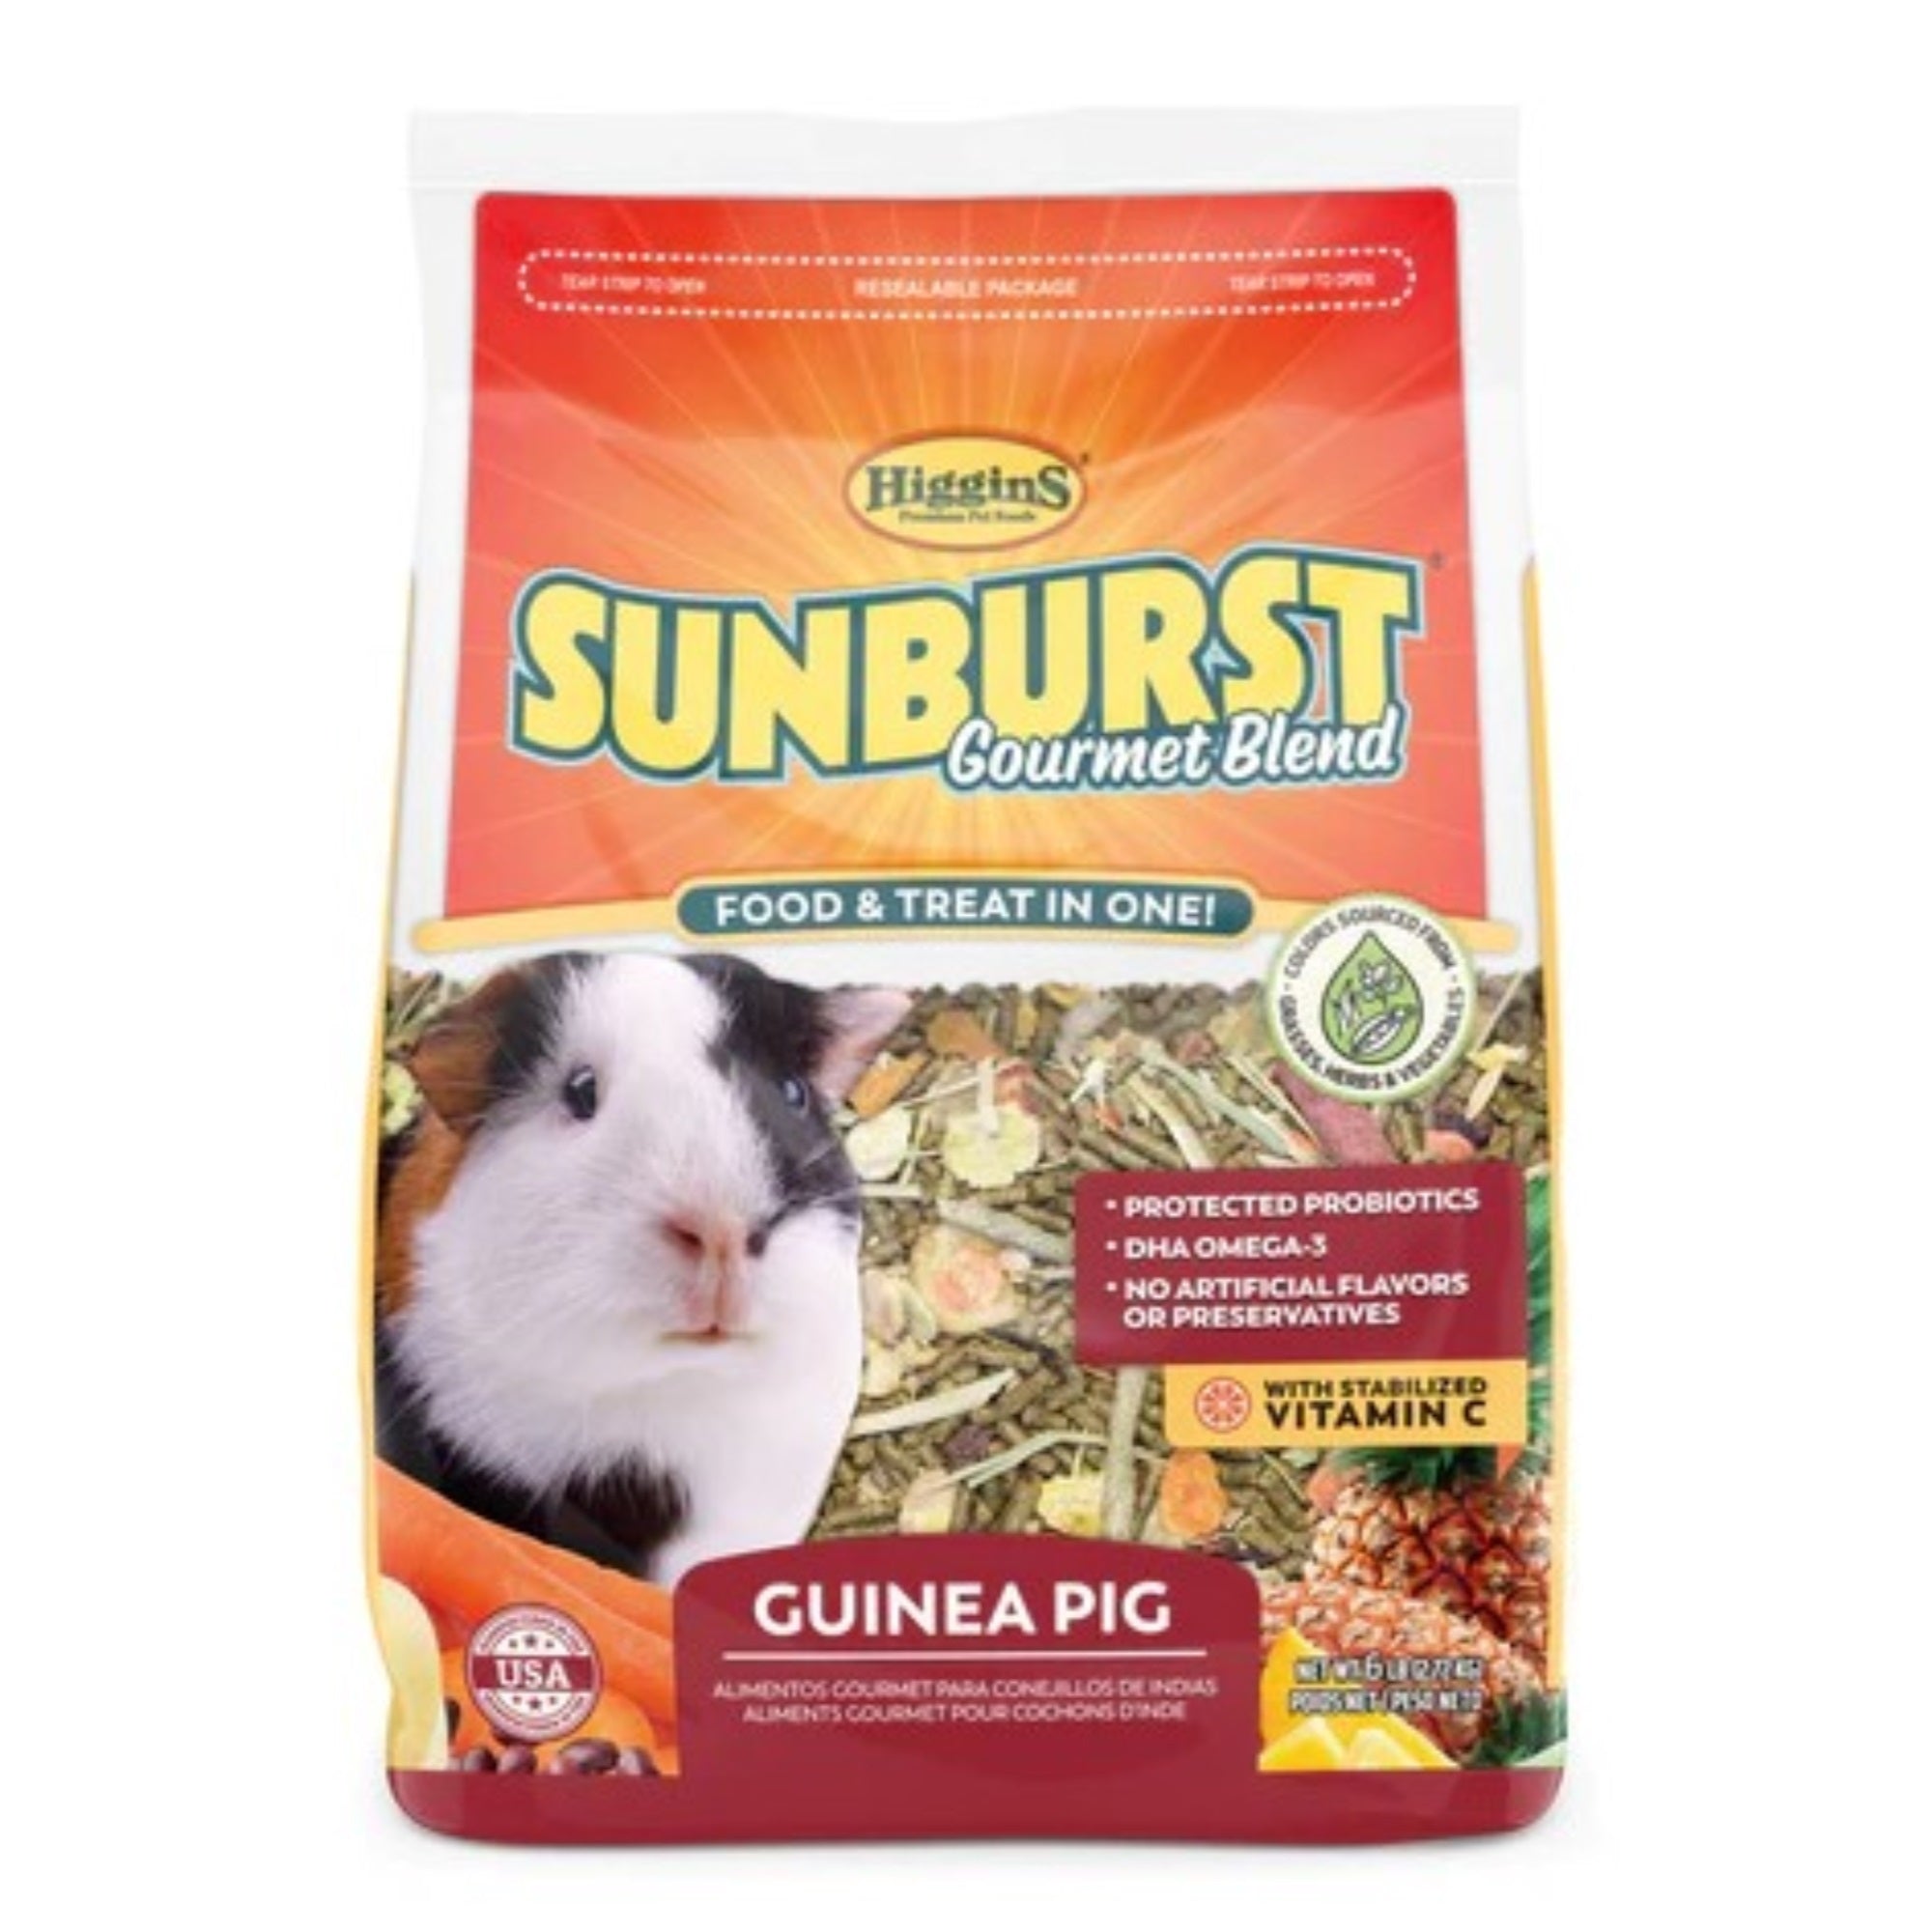 Higgins Sunburst Gourmet Blend Guinea Pig Food, 25lb Bag